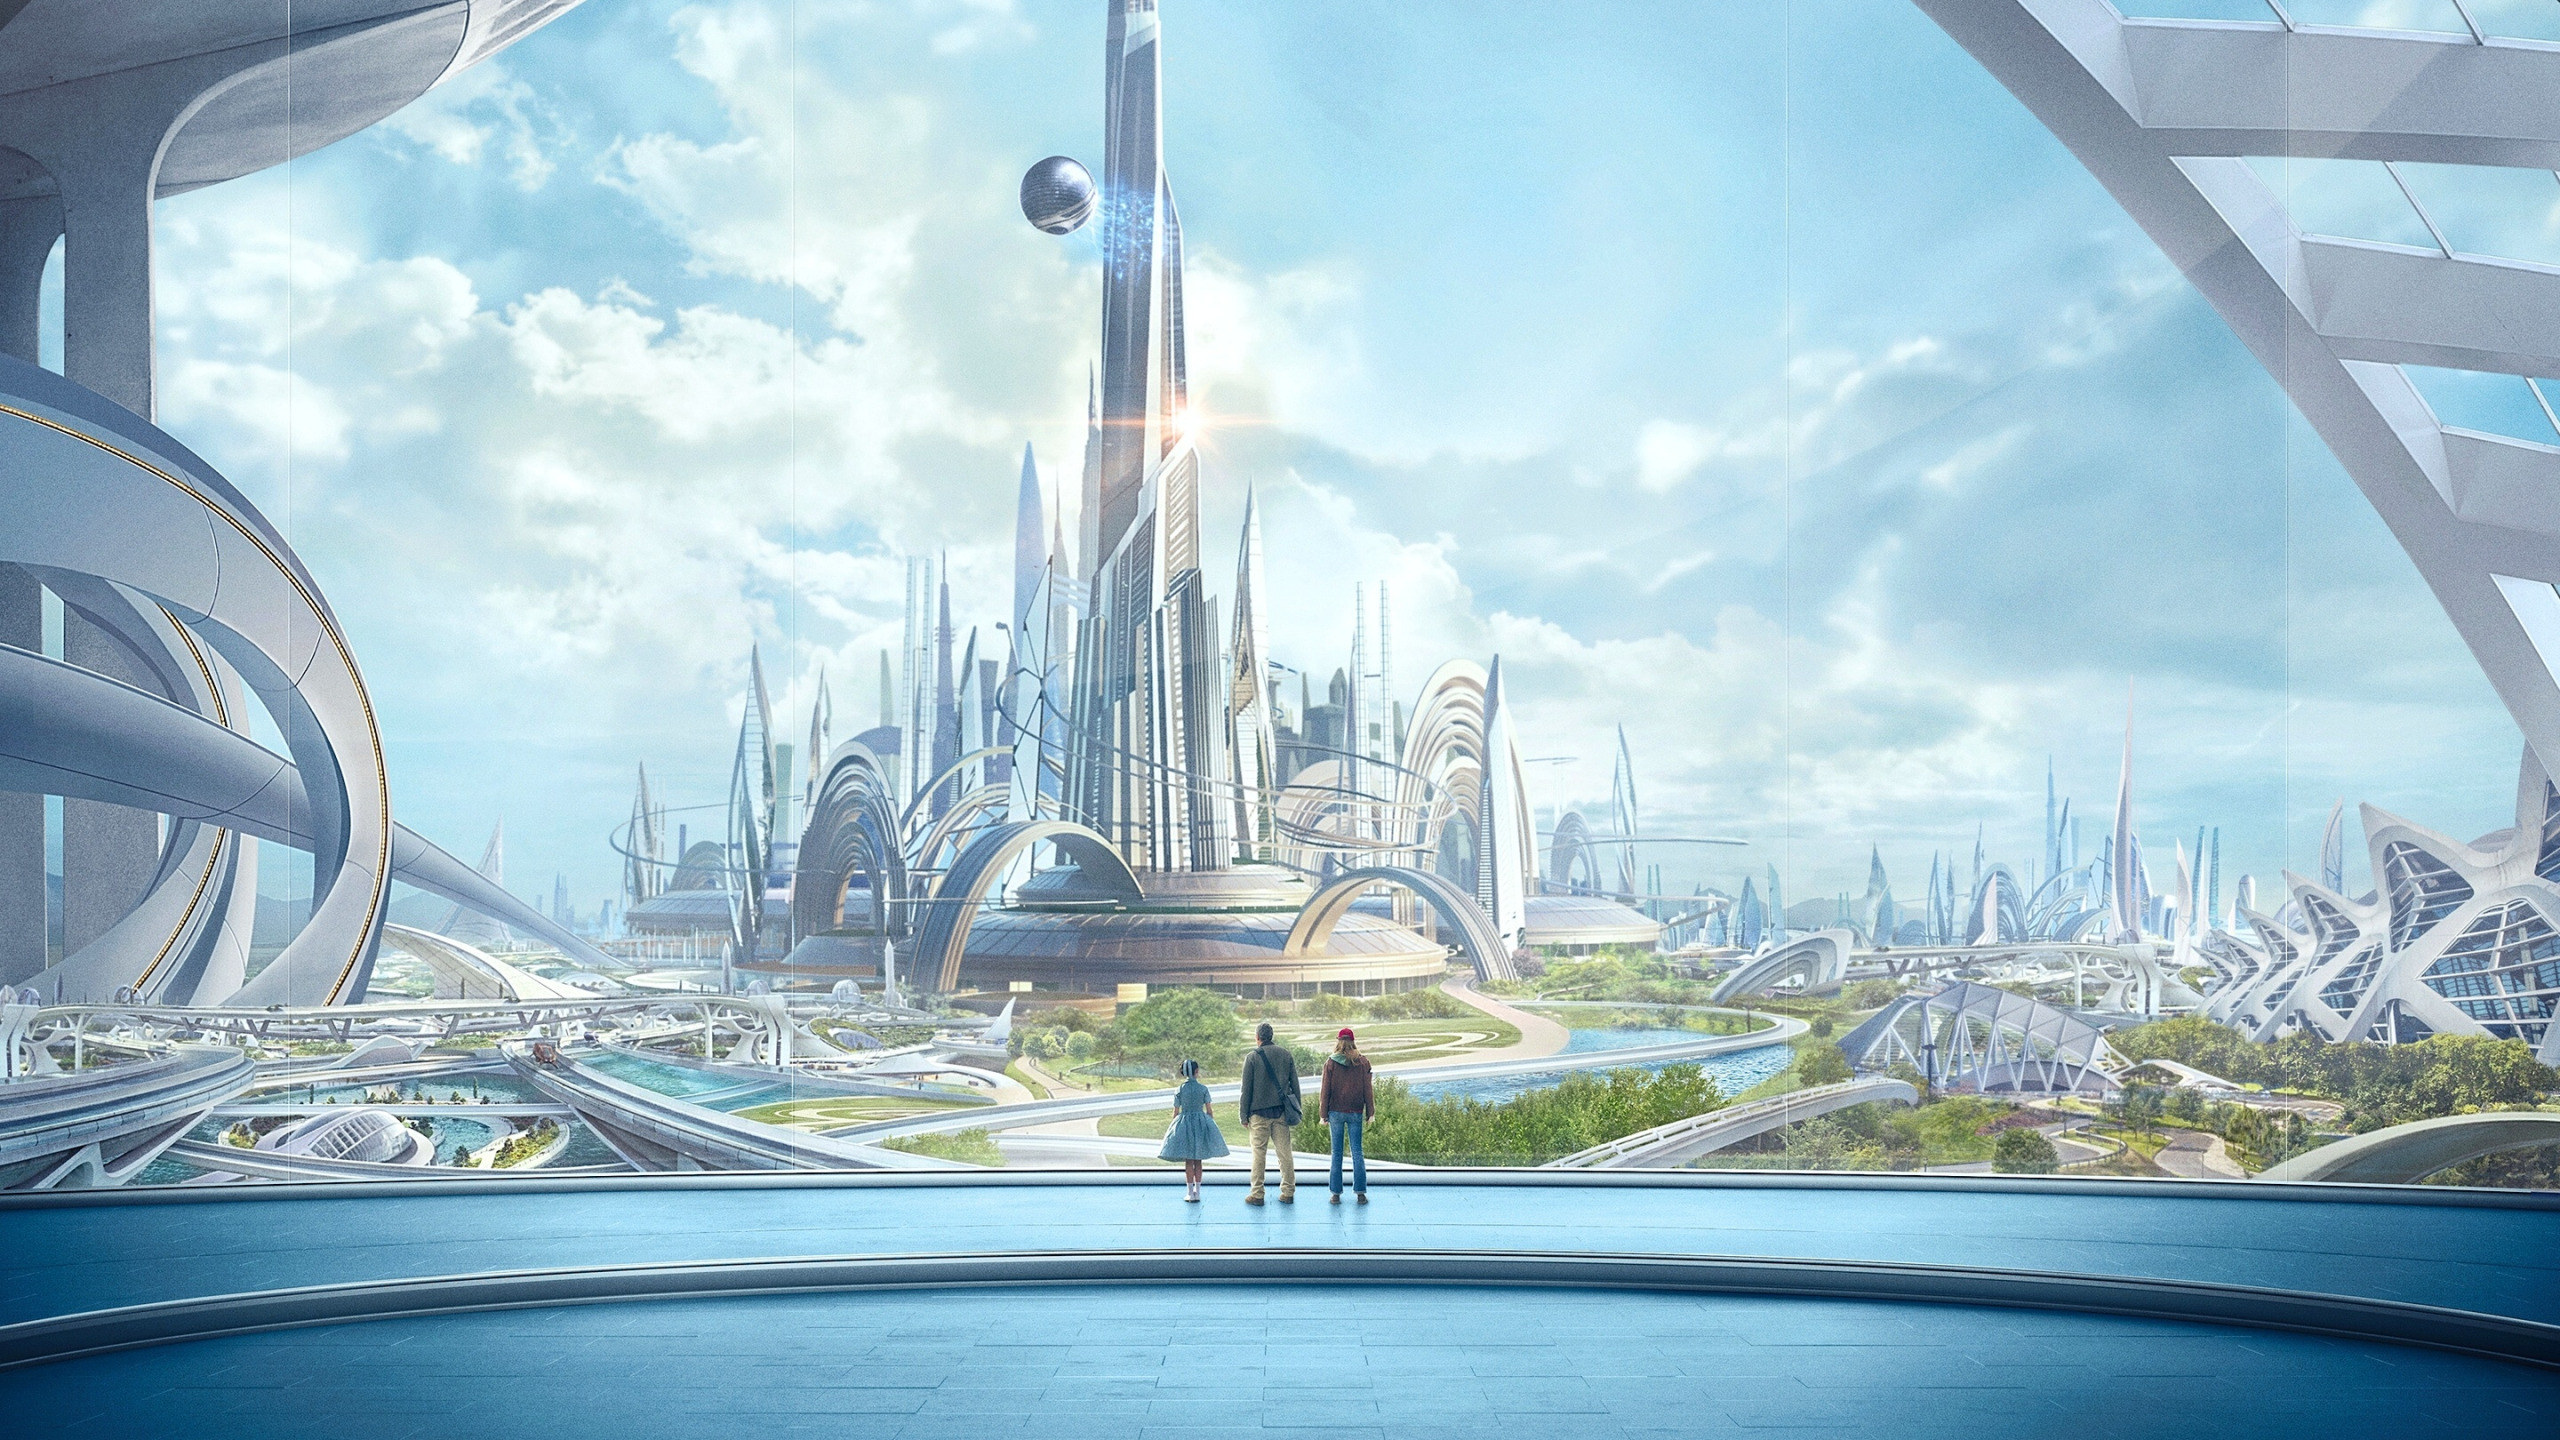 Человек 2100 года. Экогород будущего концепт Левиафан. Город в будущем. Футуристический пейзаж.